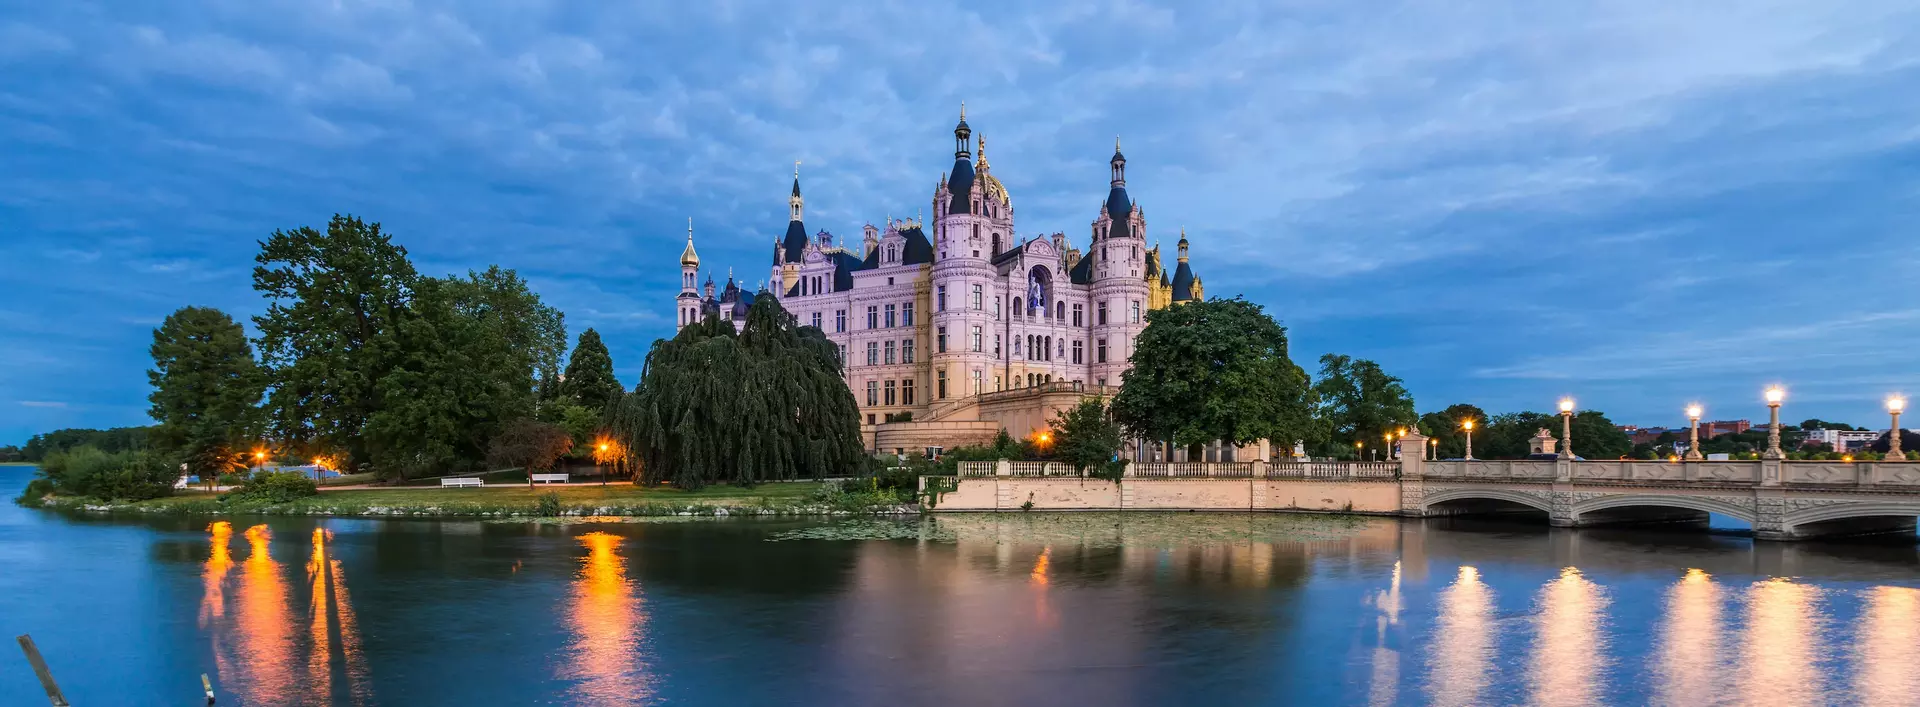 Blick auf das Schloss Schwerin bei Dämmerung